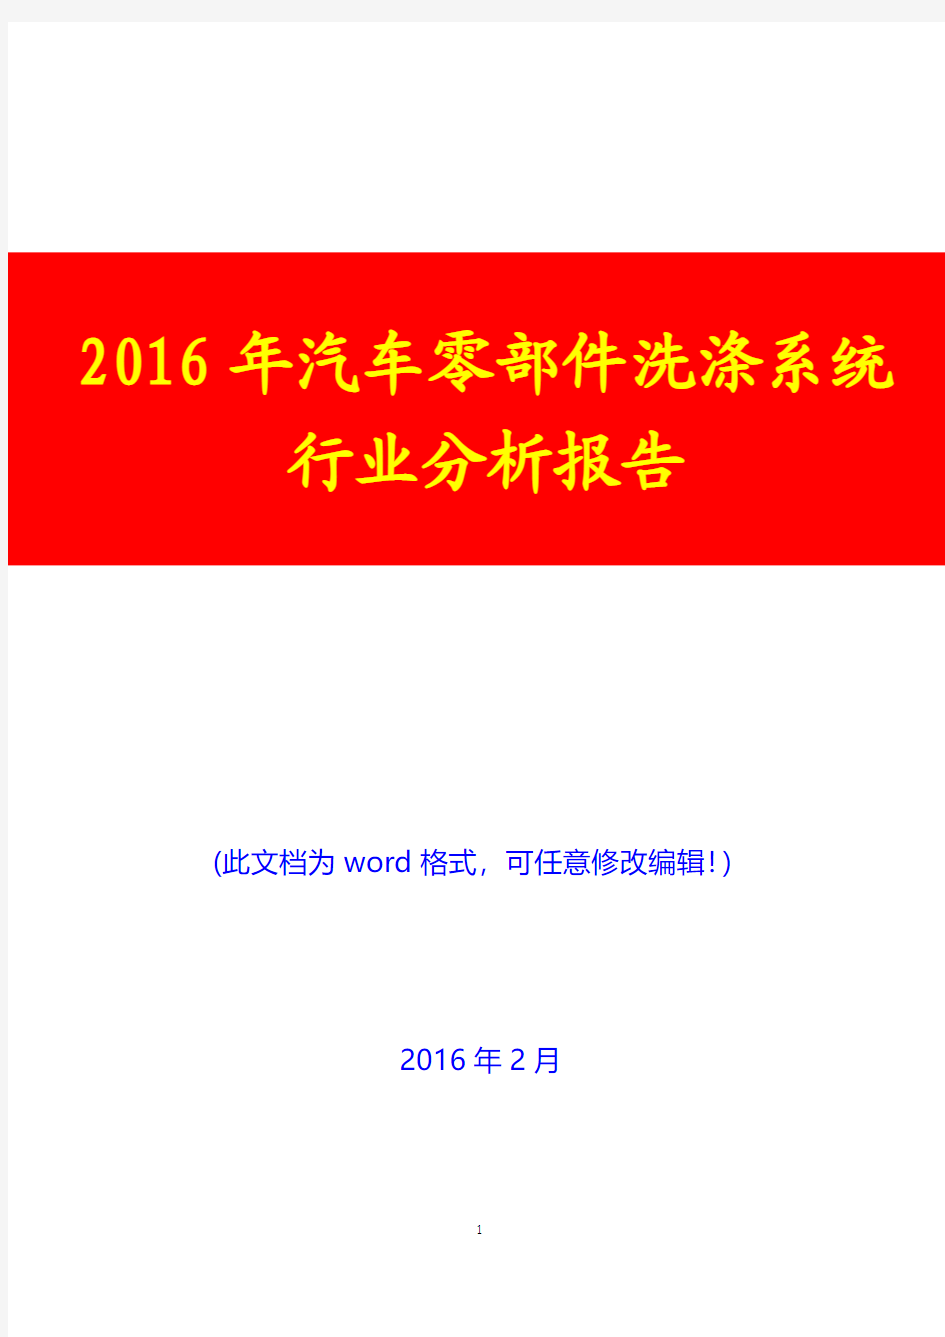 2016年汽车零部件洗涤系统行业分析报告(经典版)